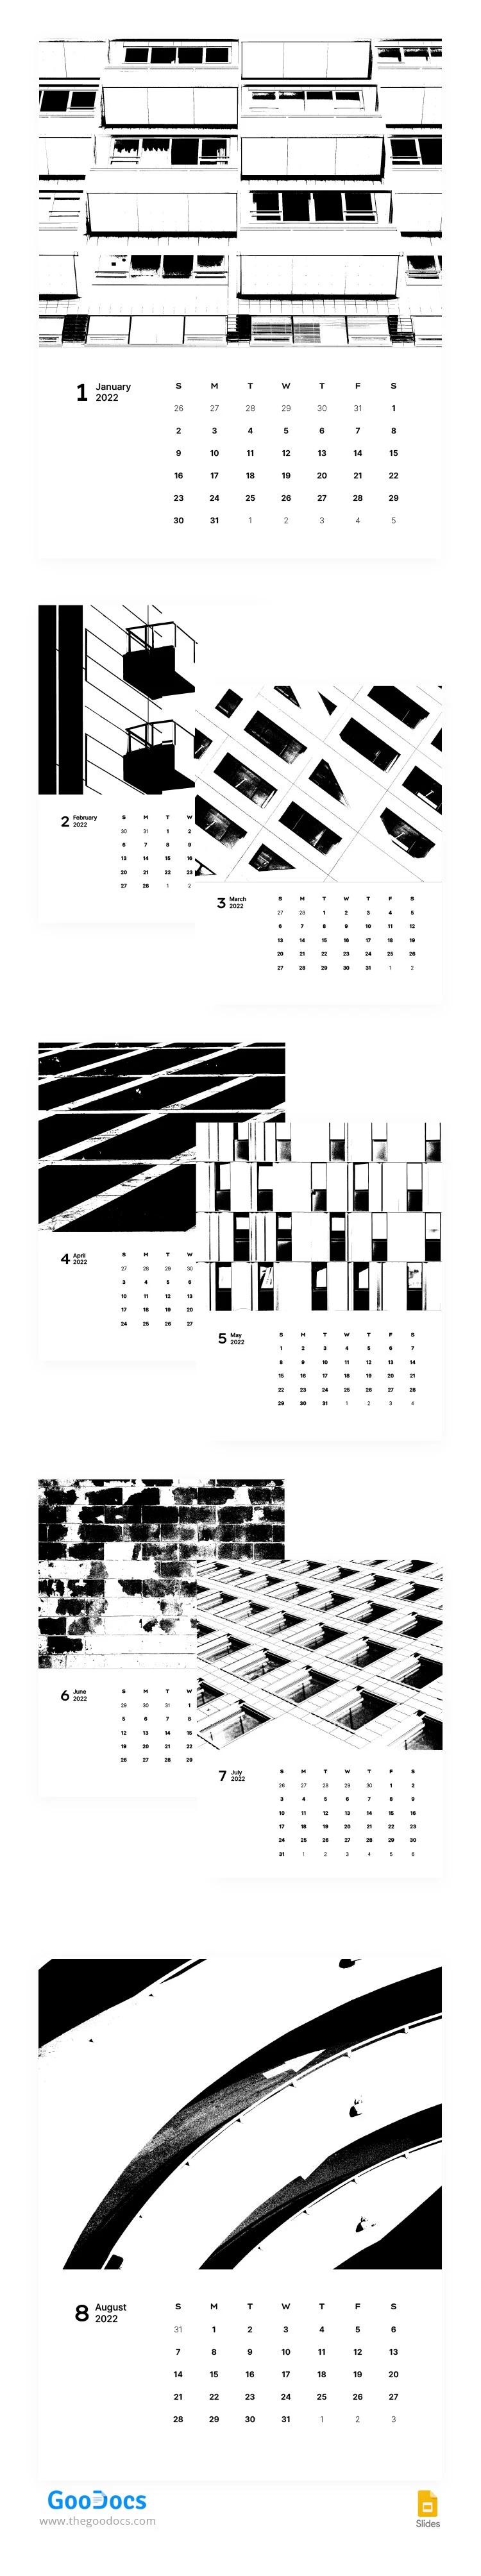 Calendario estilizado en blanco y negro - free Google Docs Template - 10063075